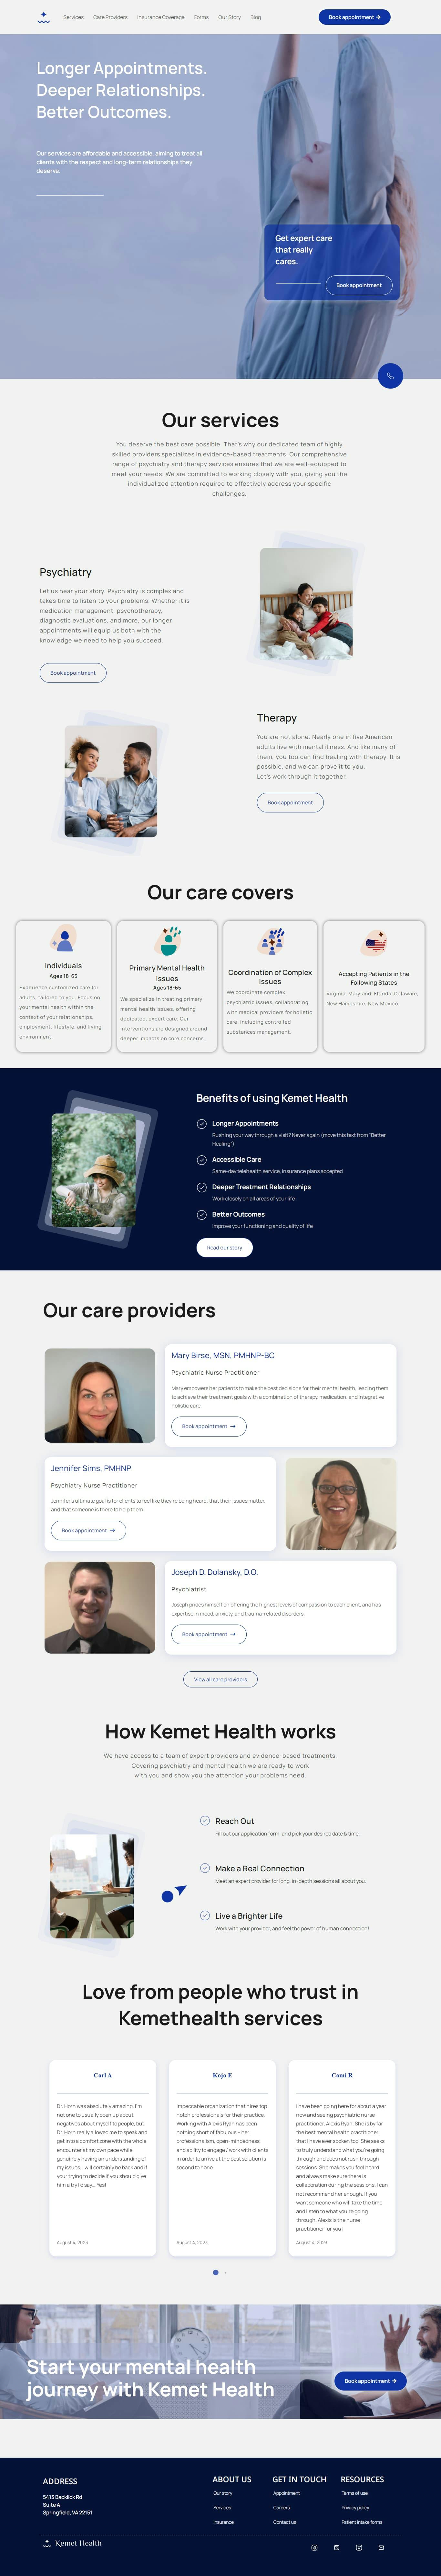 Kemet Health - Homepage